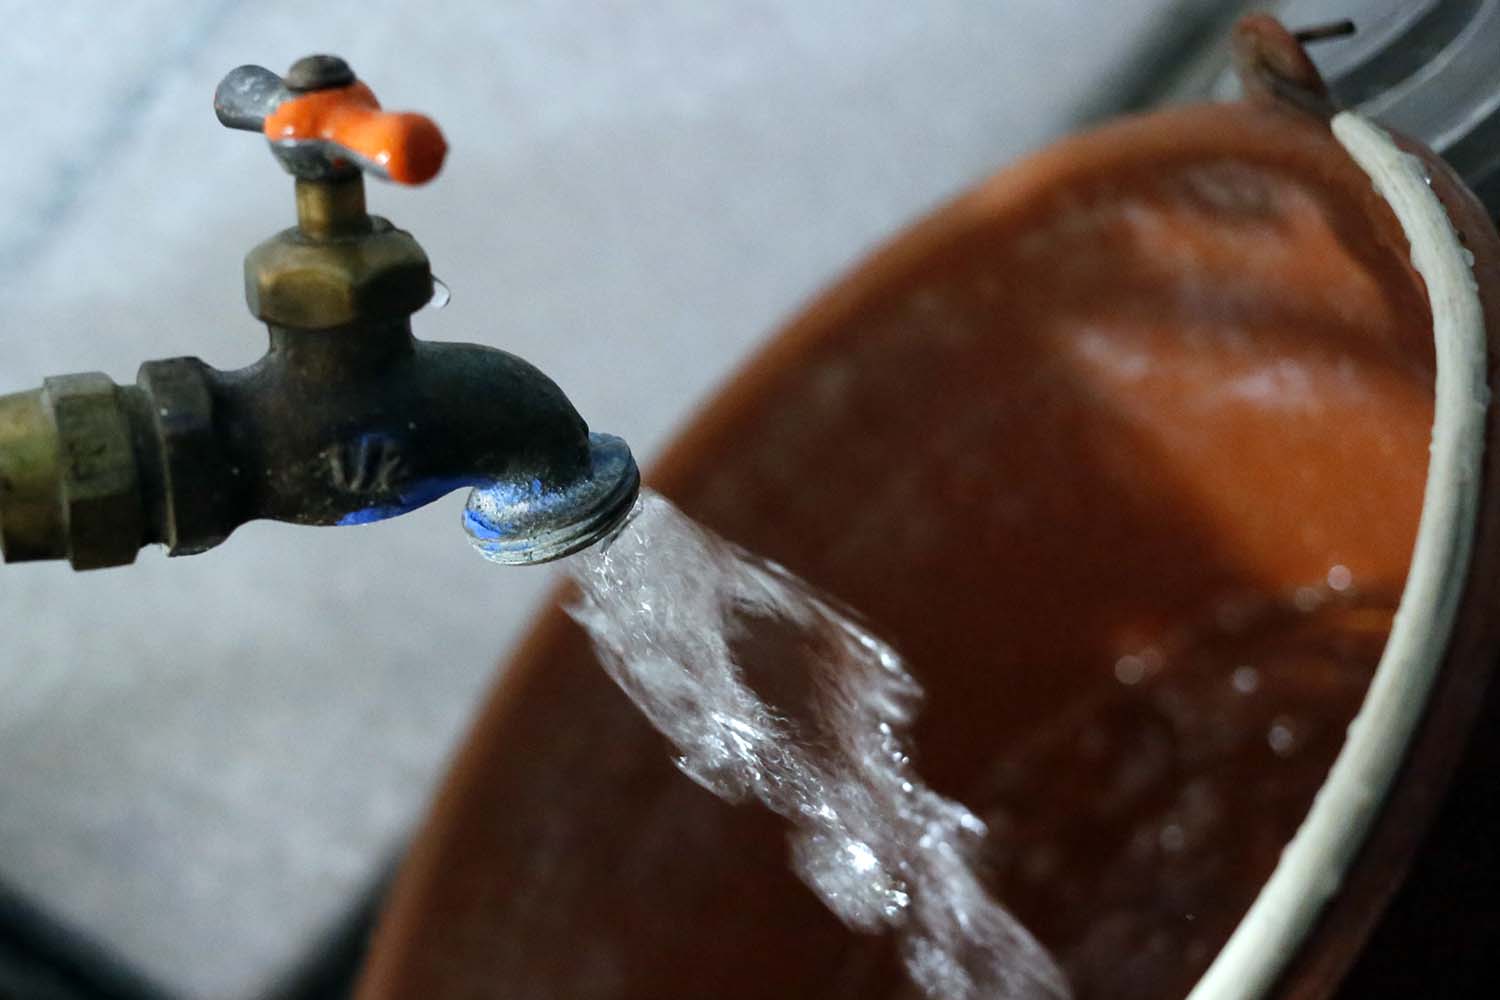  Tampoco Villa de La Paz, Villa de Reyes y Ébano podrán aumentar tarifas de agua